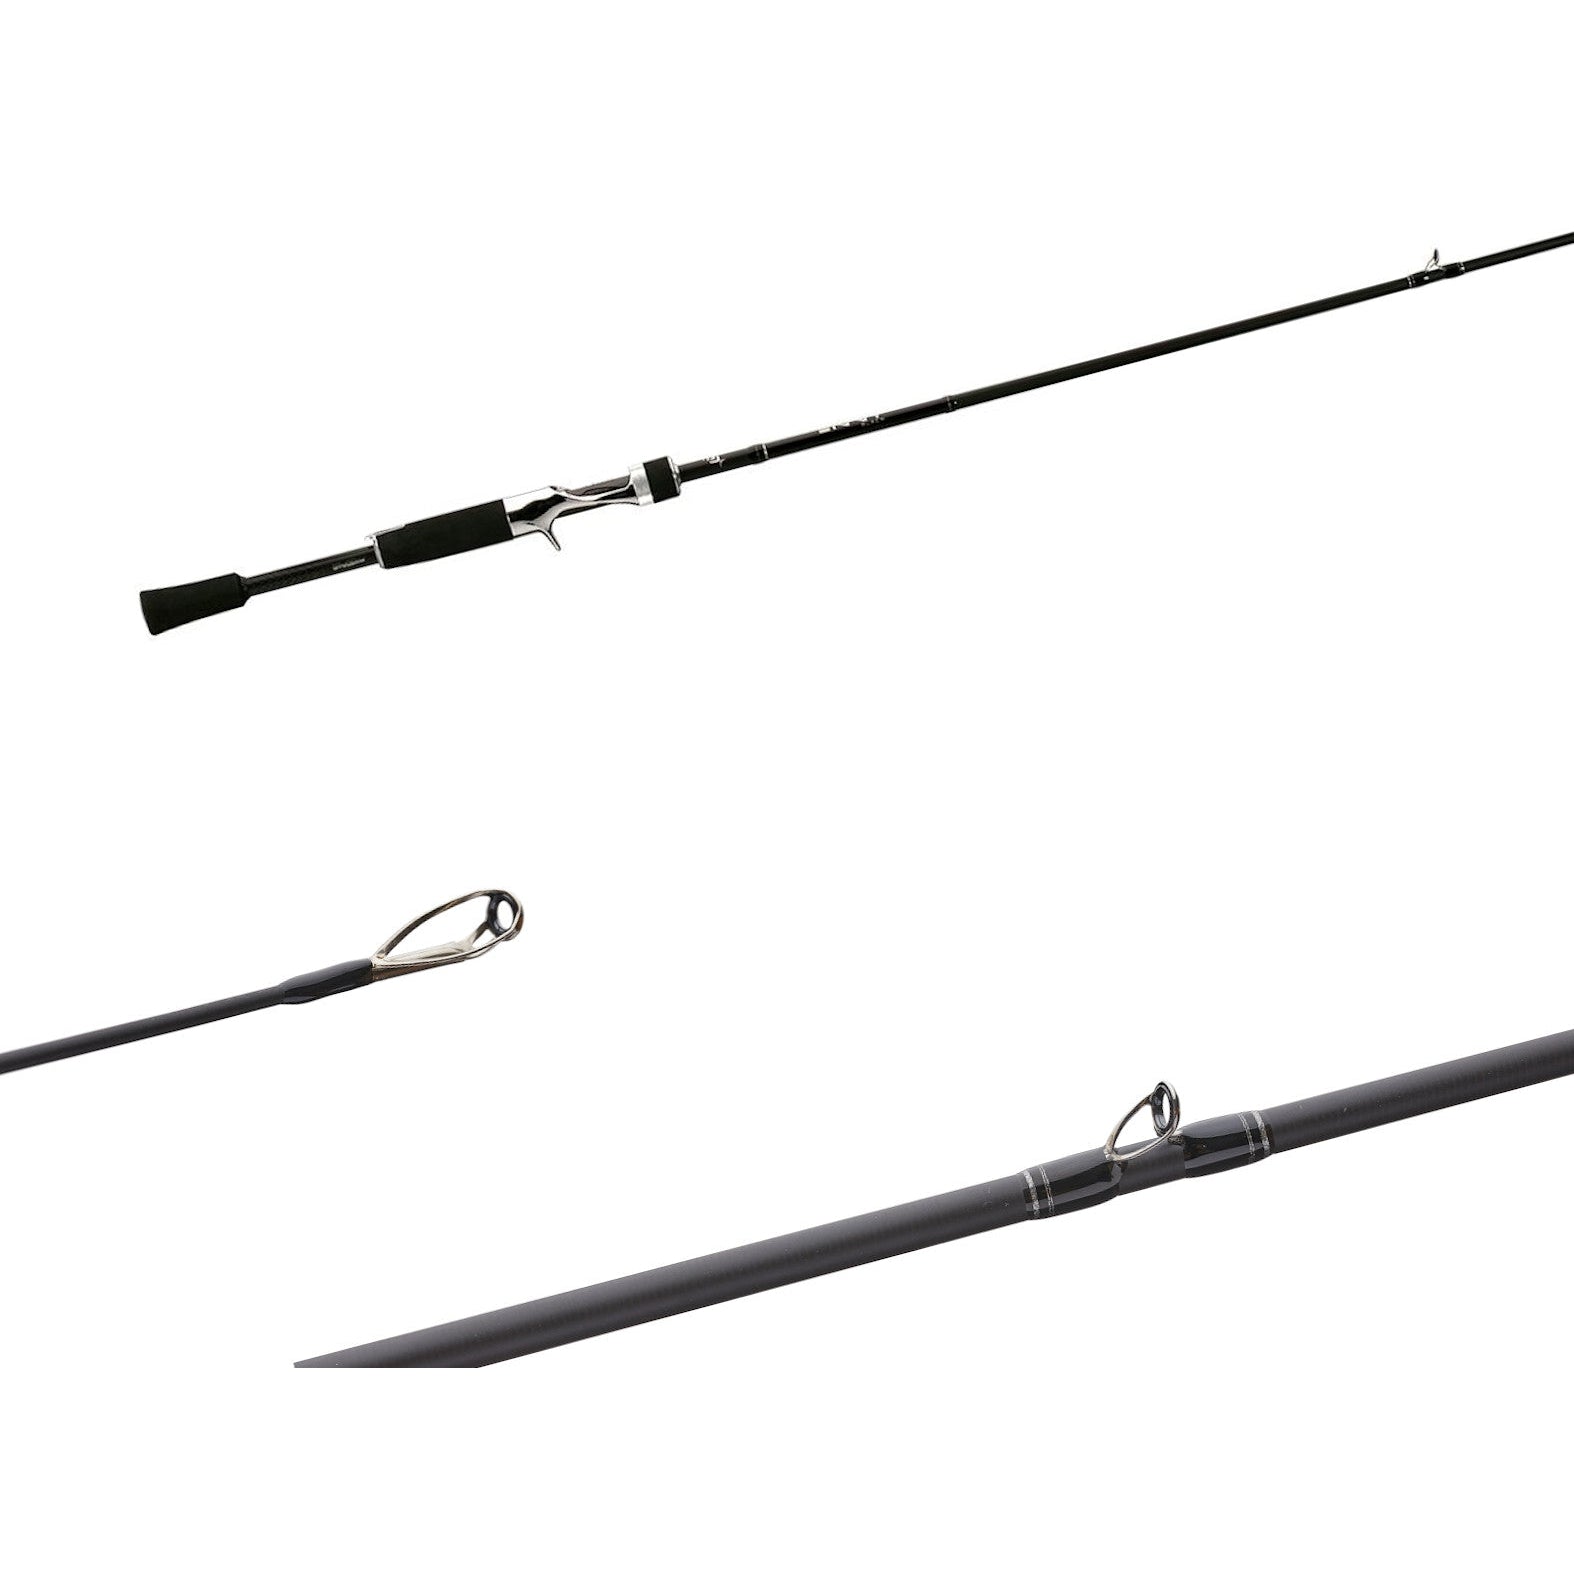 13 Fishing Envy Black 2 Casting Rods, Kentackle